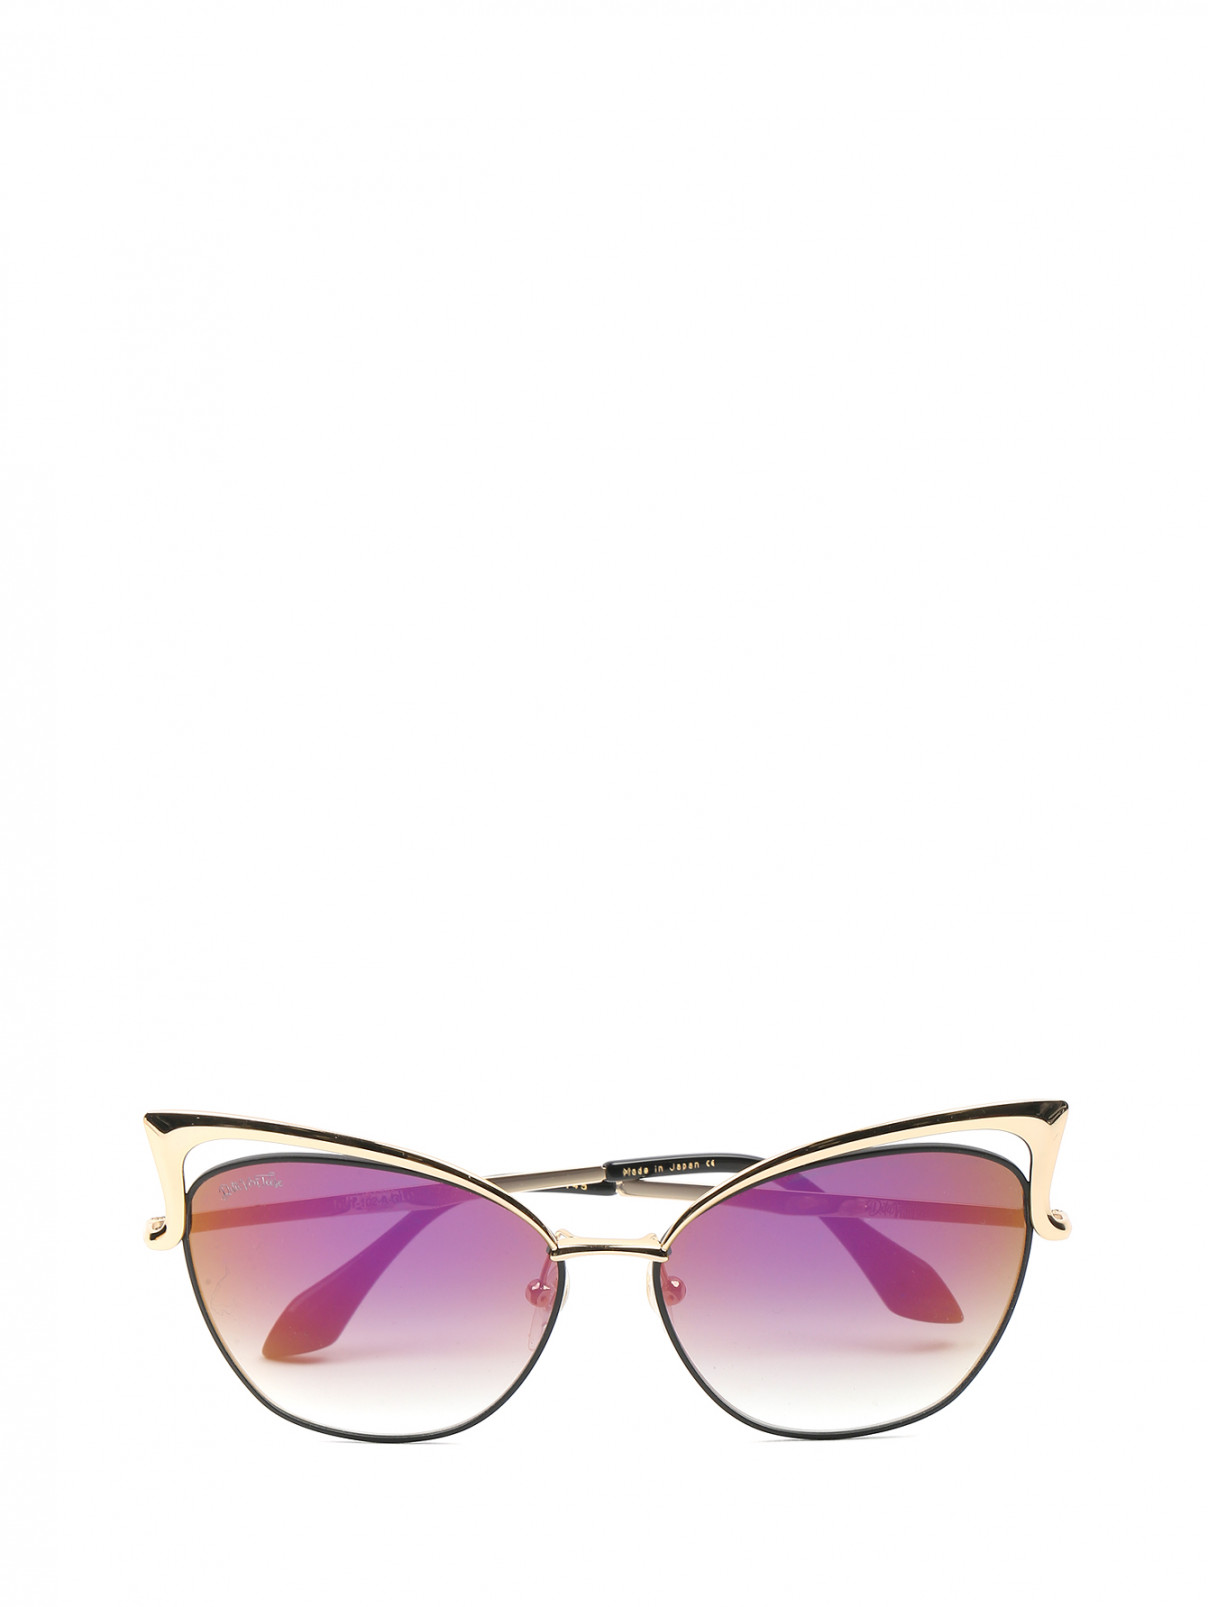 Cолнцезащитные очки в металлической оправе Dita  –  Общий вид  – Цвет:  Золотой